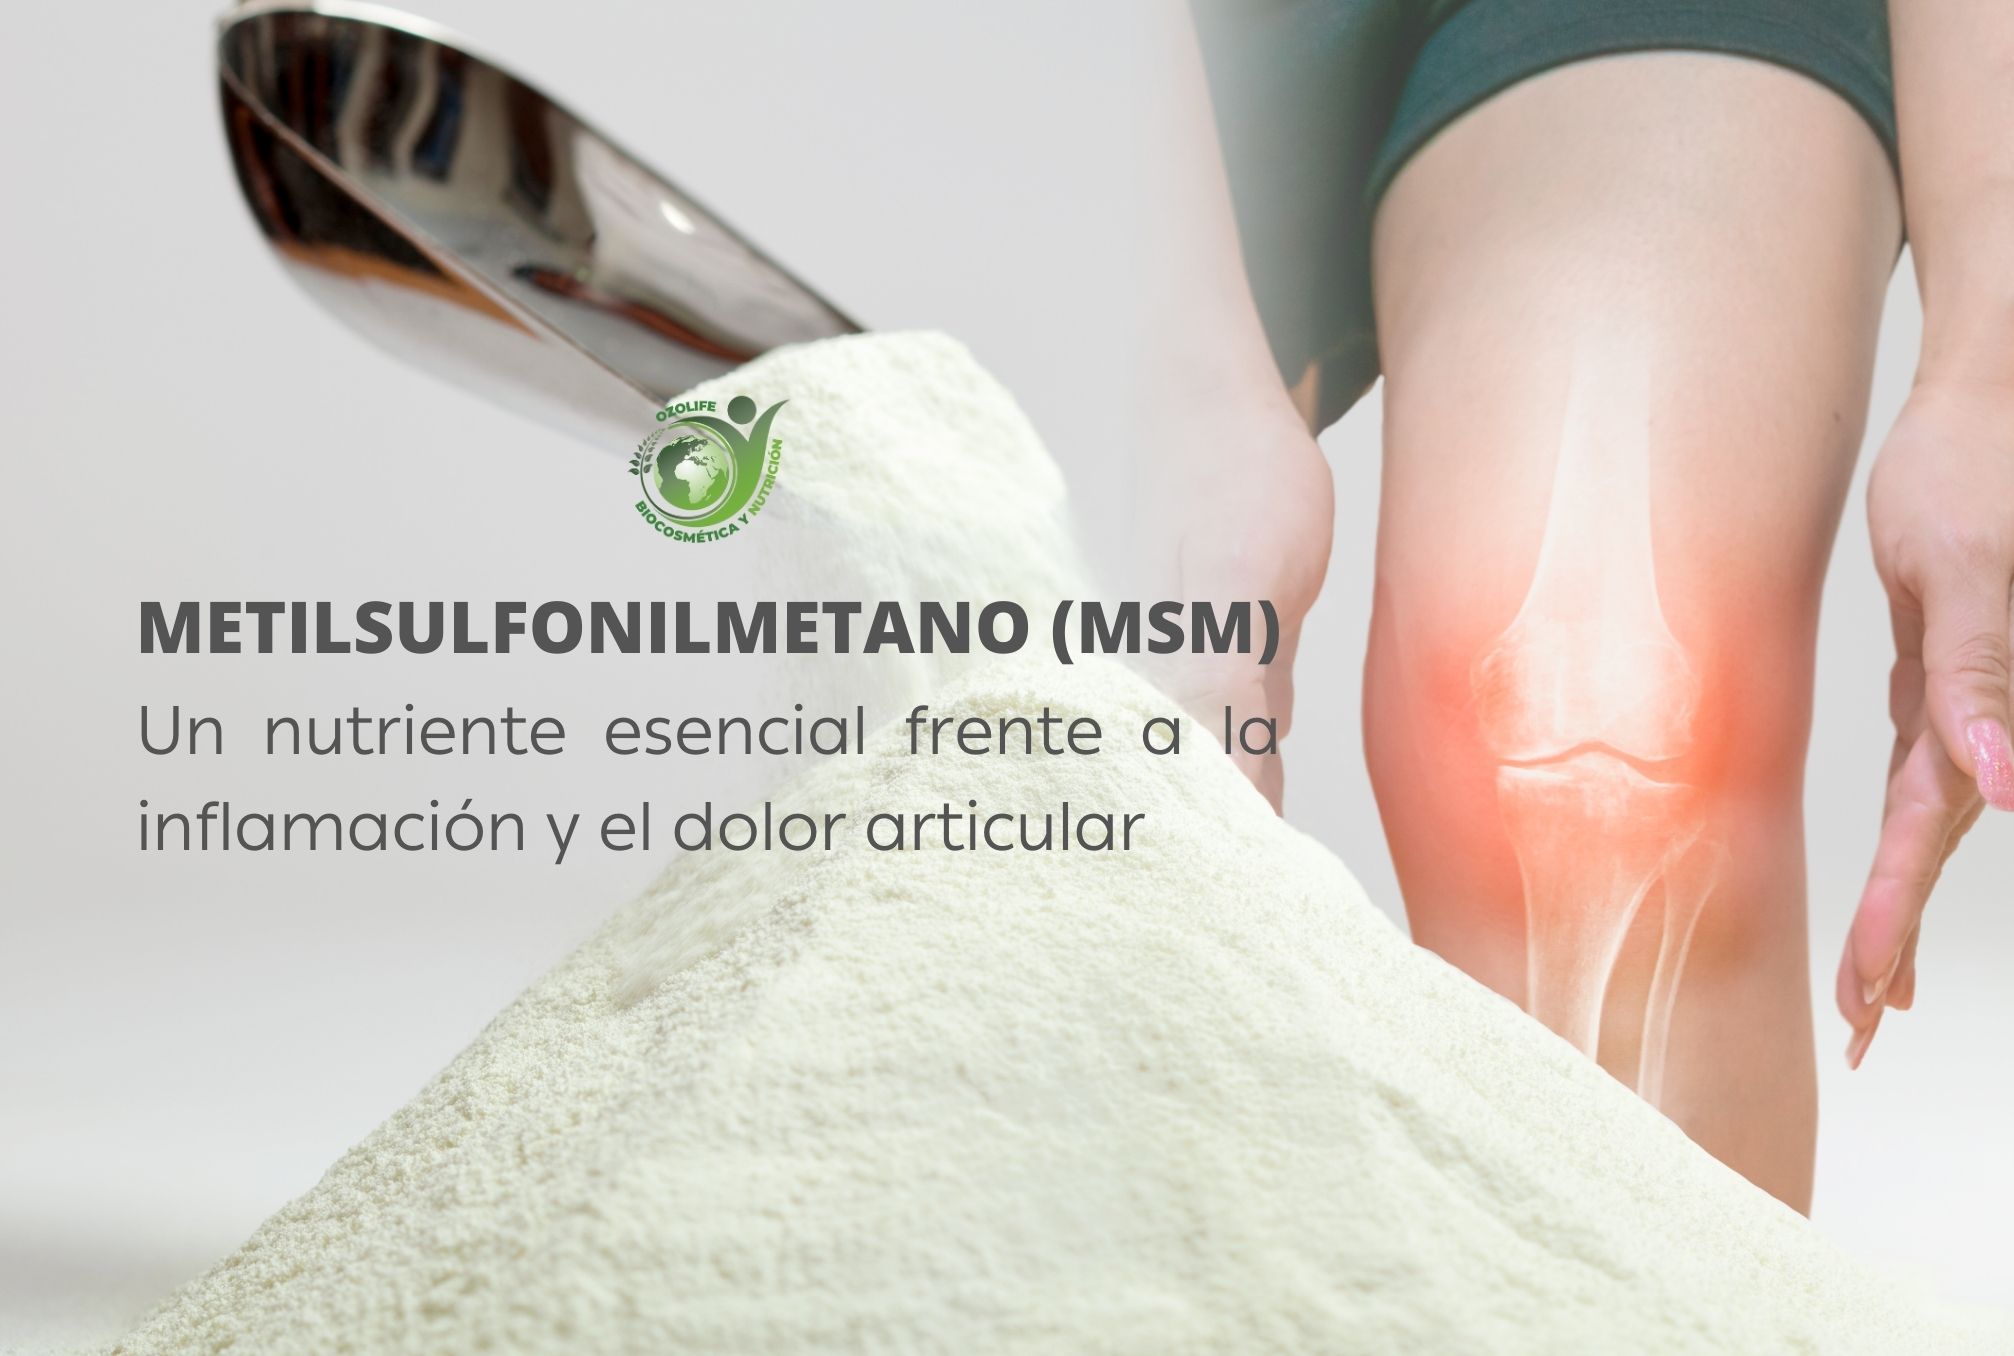 En este momento estás viendo Metilsulfonilmetano (MSM), un nutriente esencial frente a la inflamación y el dolor articular